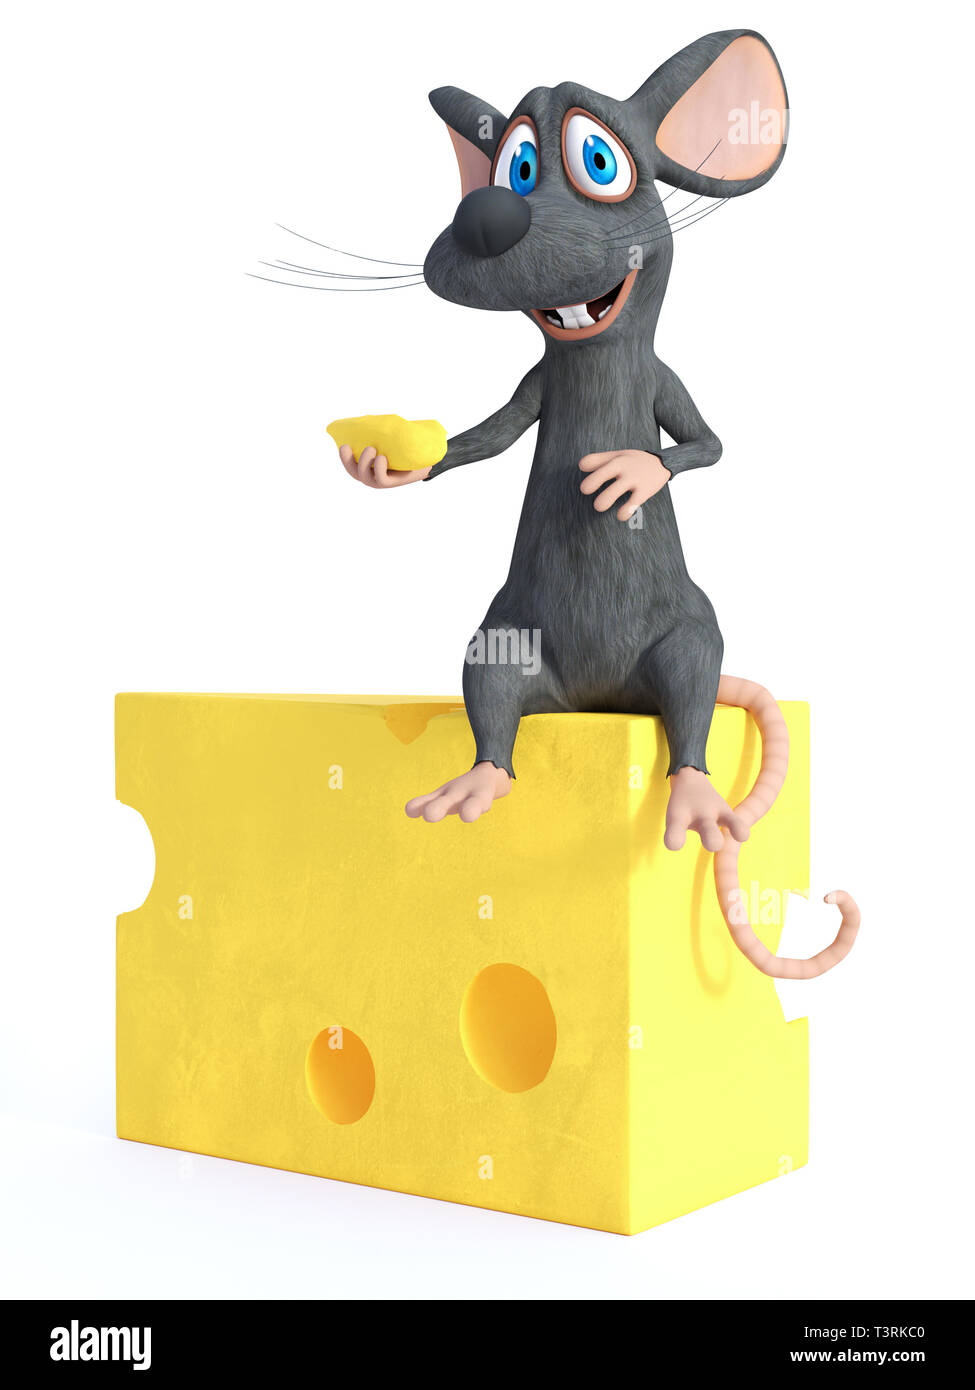 Le rendu 3D d'un sourire mignon cartoon souris tenant un petit morceau de fromage tout en étant assis sur un gros morceau de fromage. Arrière-plan blanc. Banque D'Images